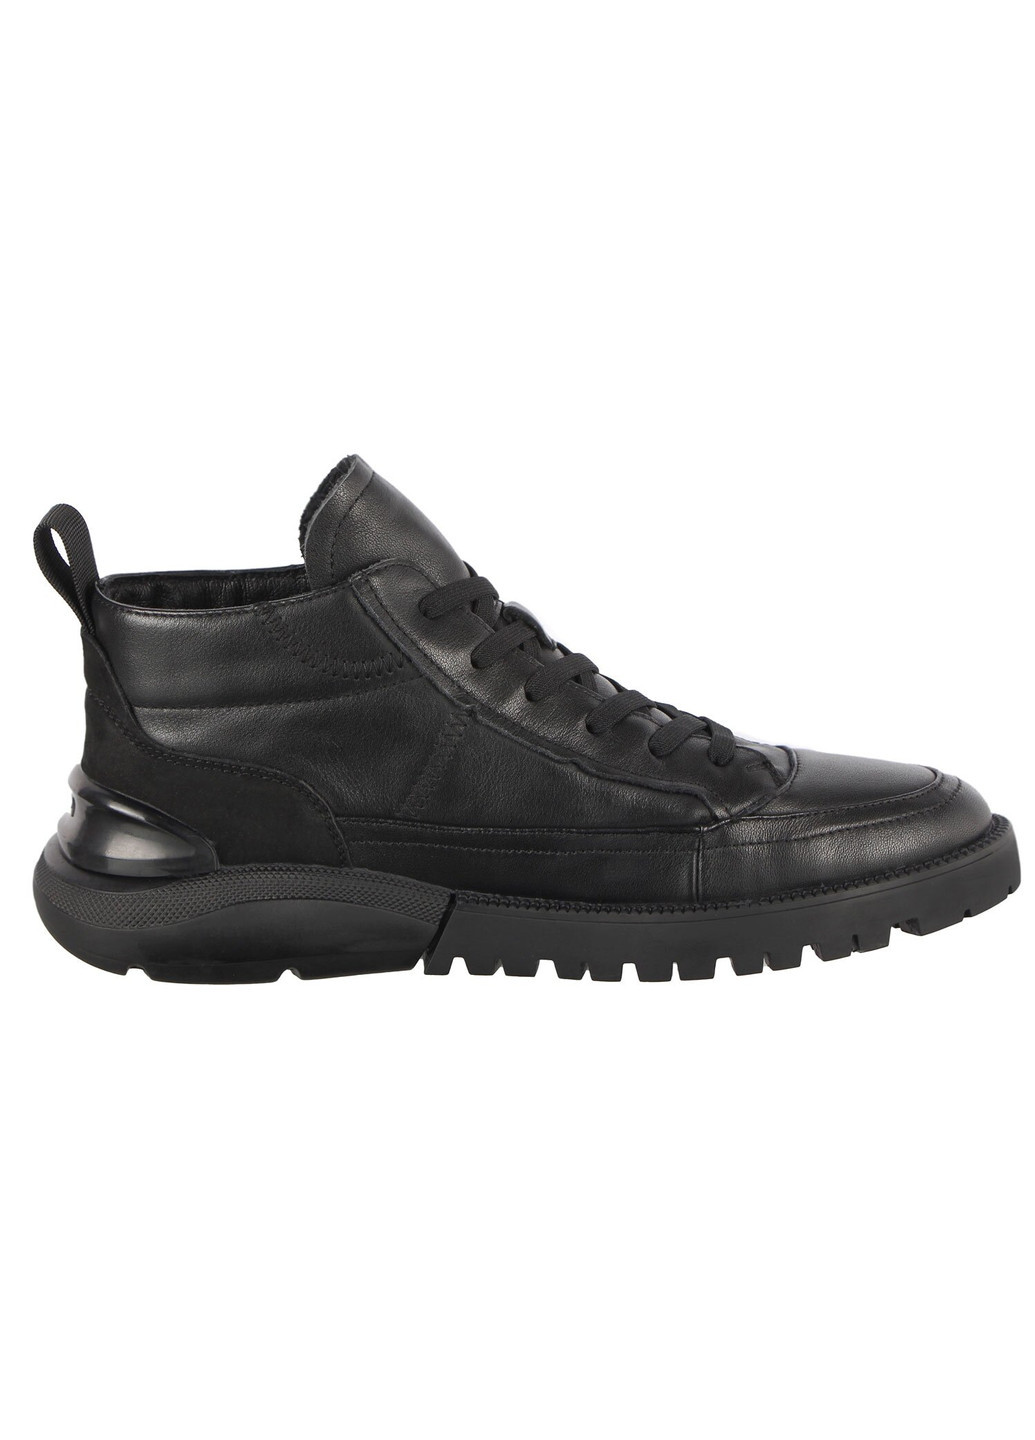 Черные осенние мужские ботинки 196372 Buts